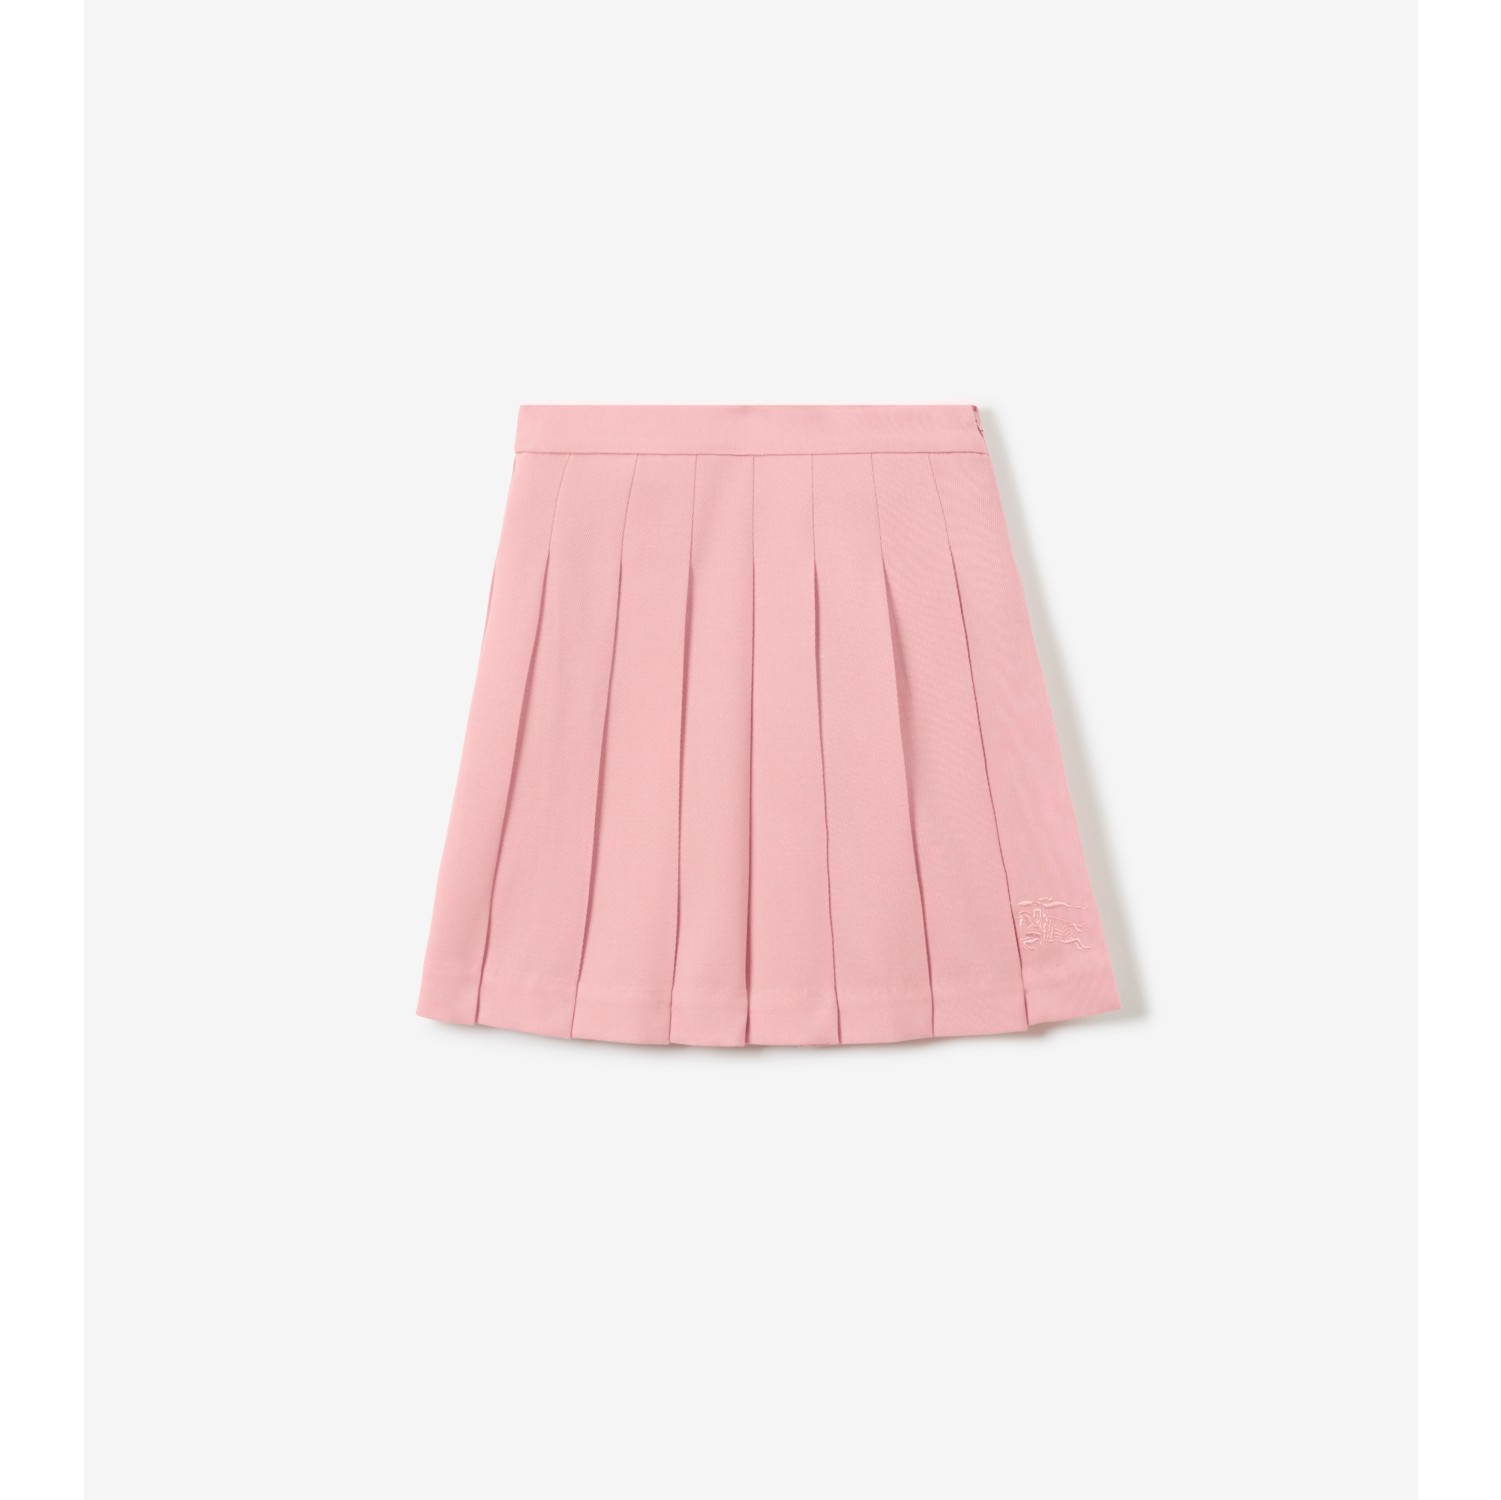 Falda cordón Color Rosa, Faldas Mujer